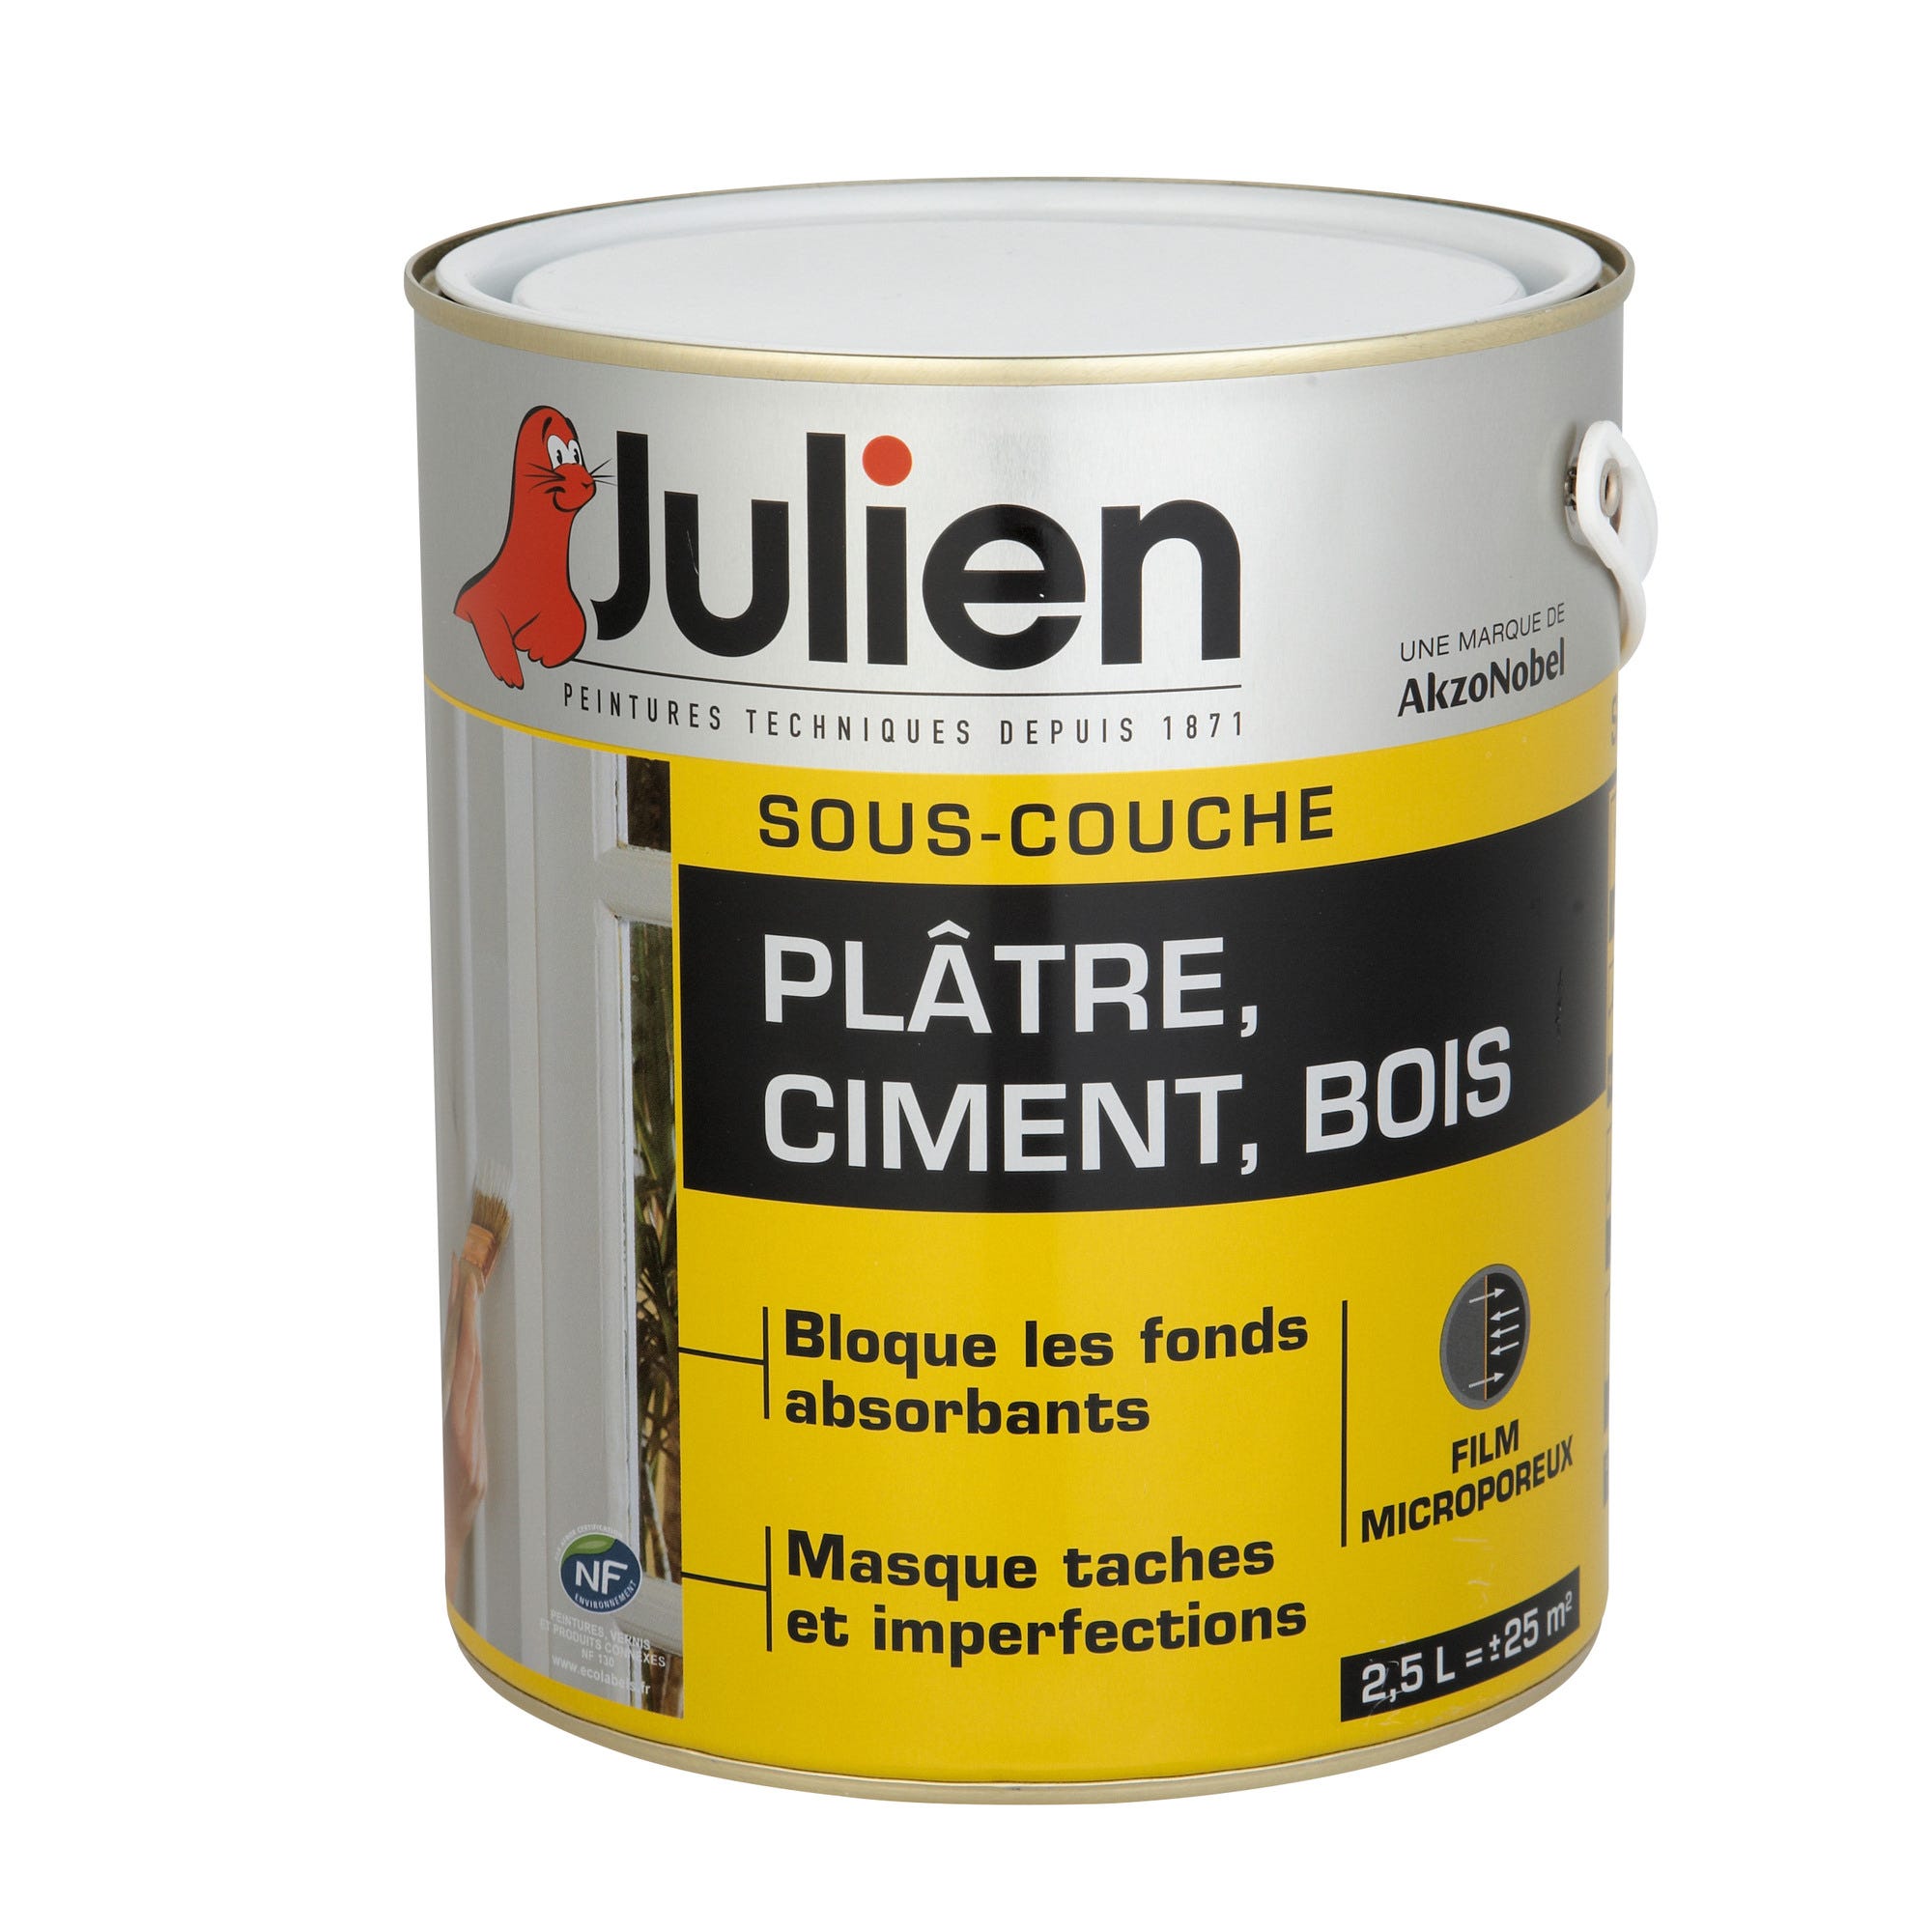 Julien Sous-couche plâtre, ciment, bois 2,5L 0